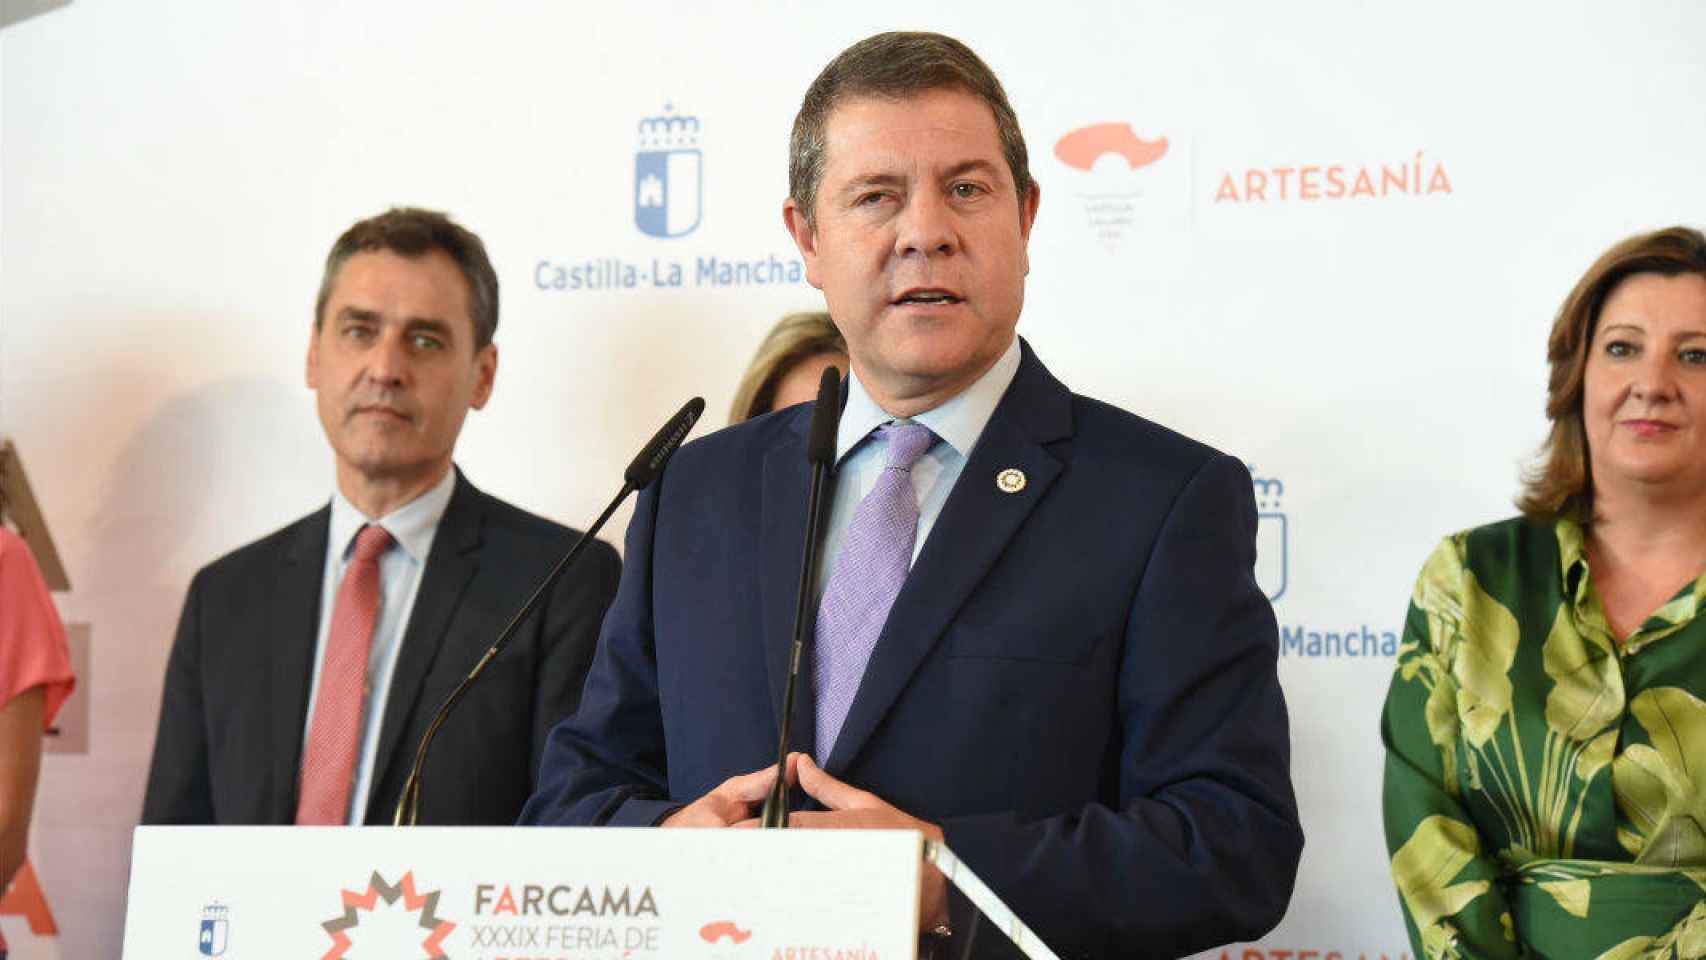 El presidente de Castilla-La Mancha, Emiliano García-Page, este viernes en la inauguración en Toledo de Farcama 2019